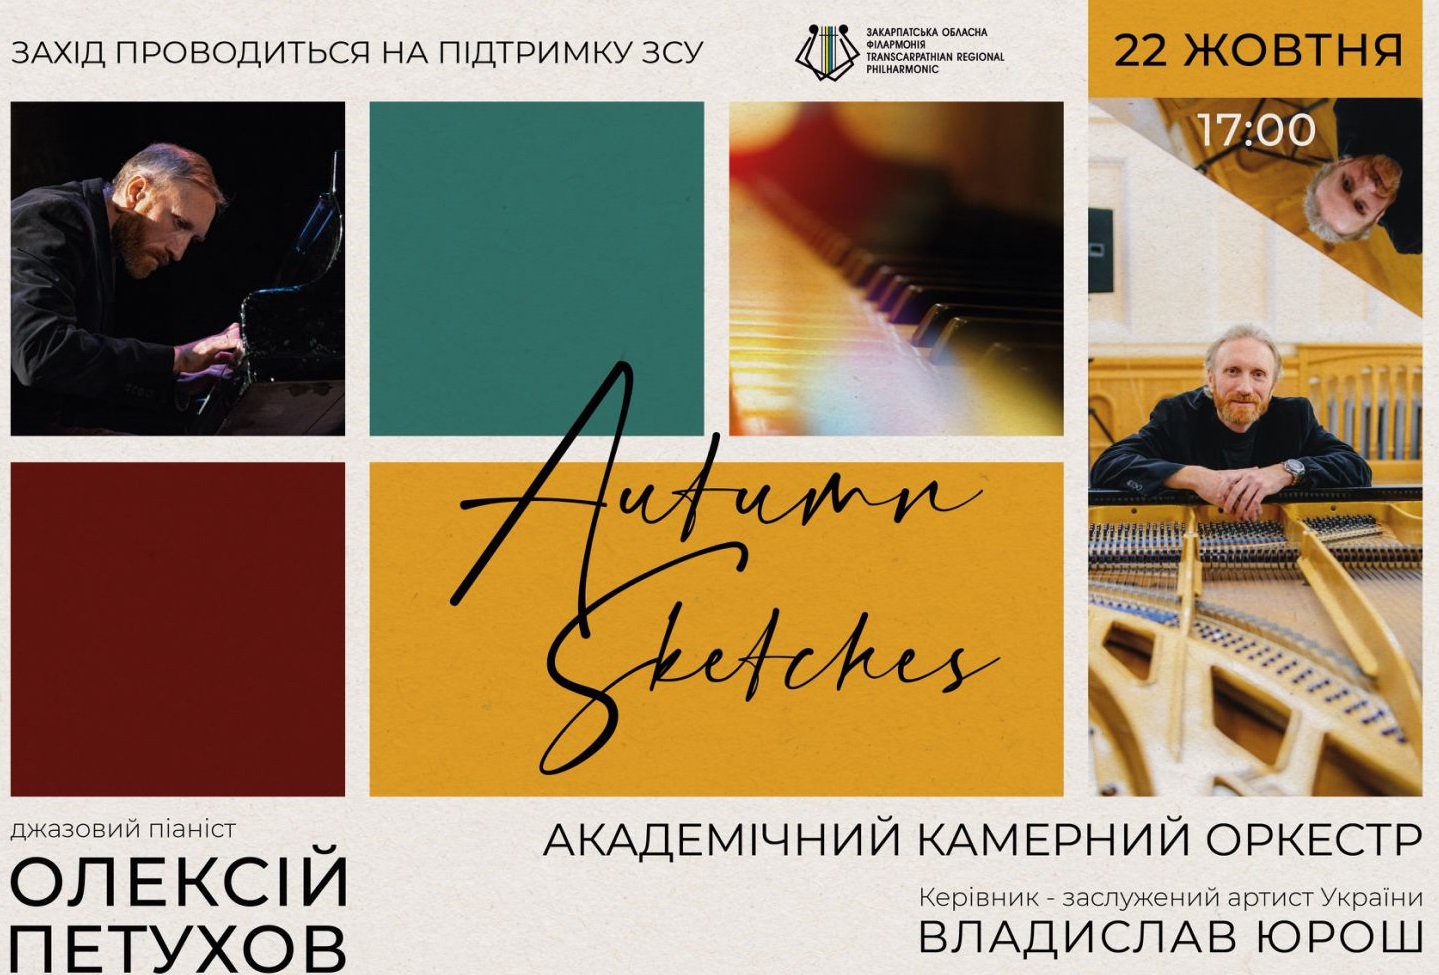 Закарпатська філармонія запрошує на концерт одеського піаніста і композитора Олексія Петухова (ВІДЕО)